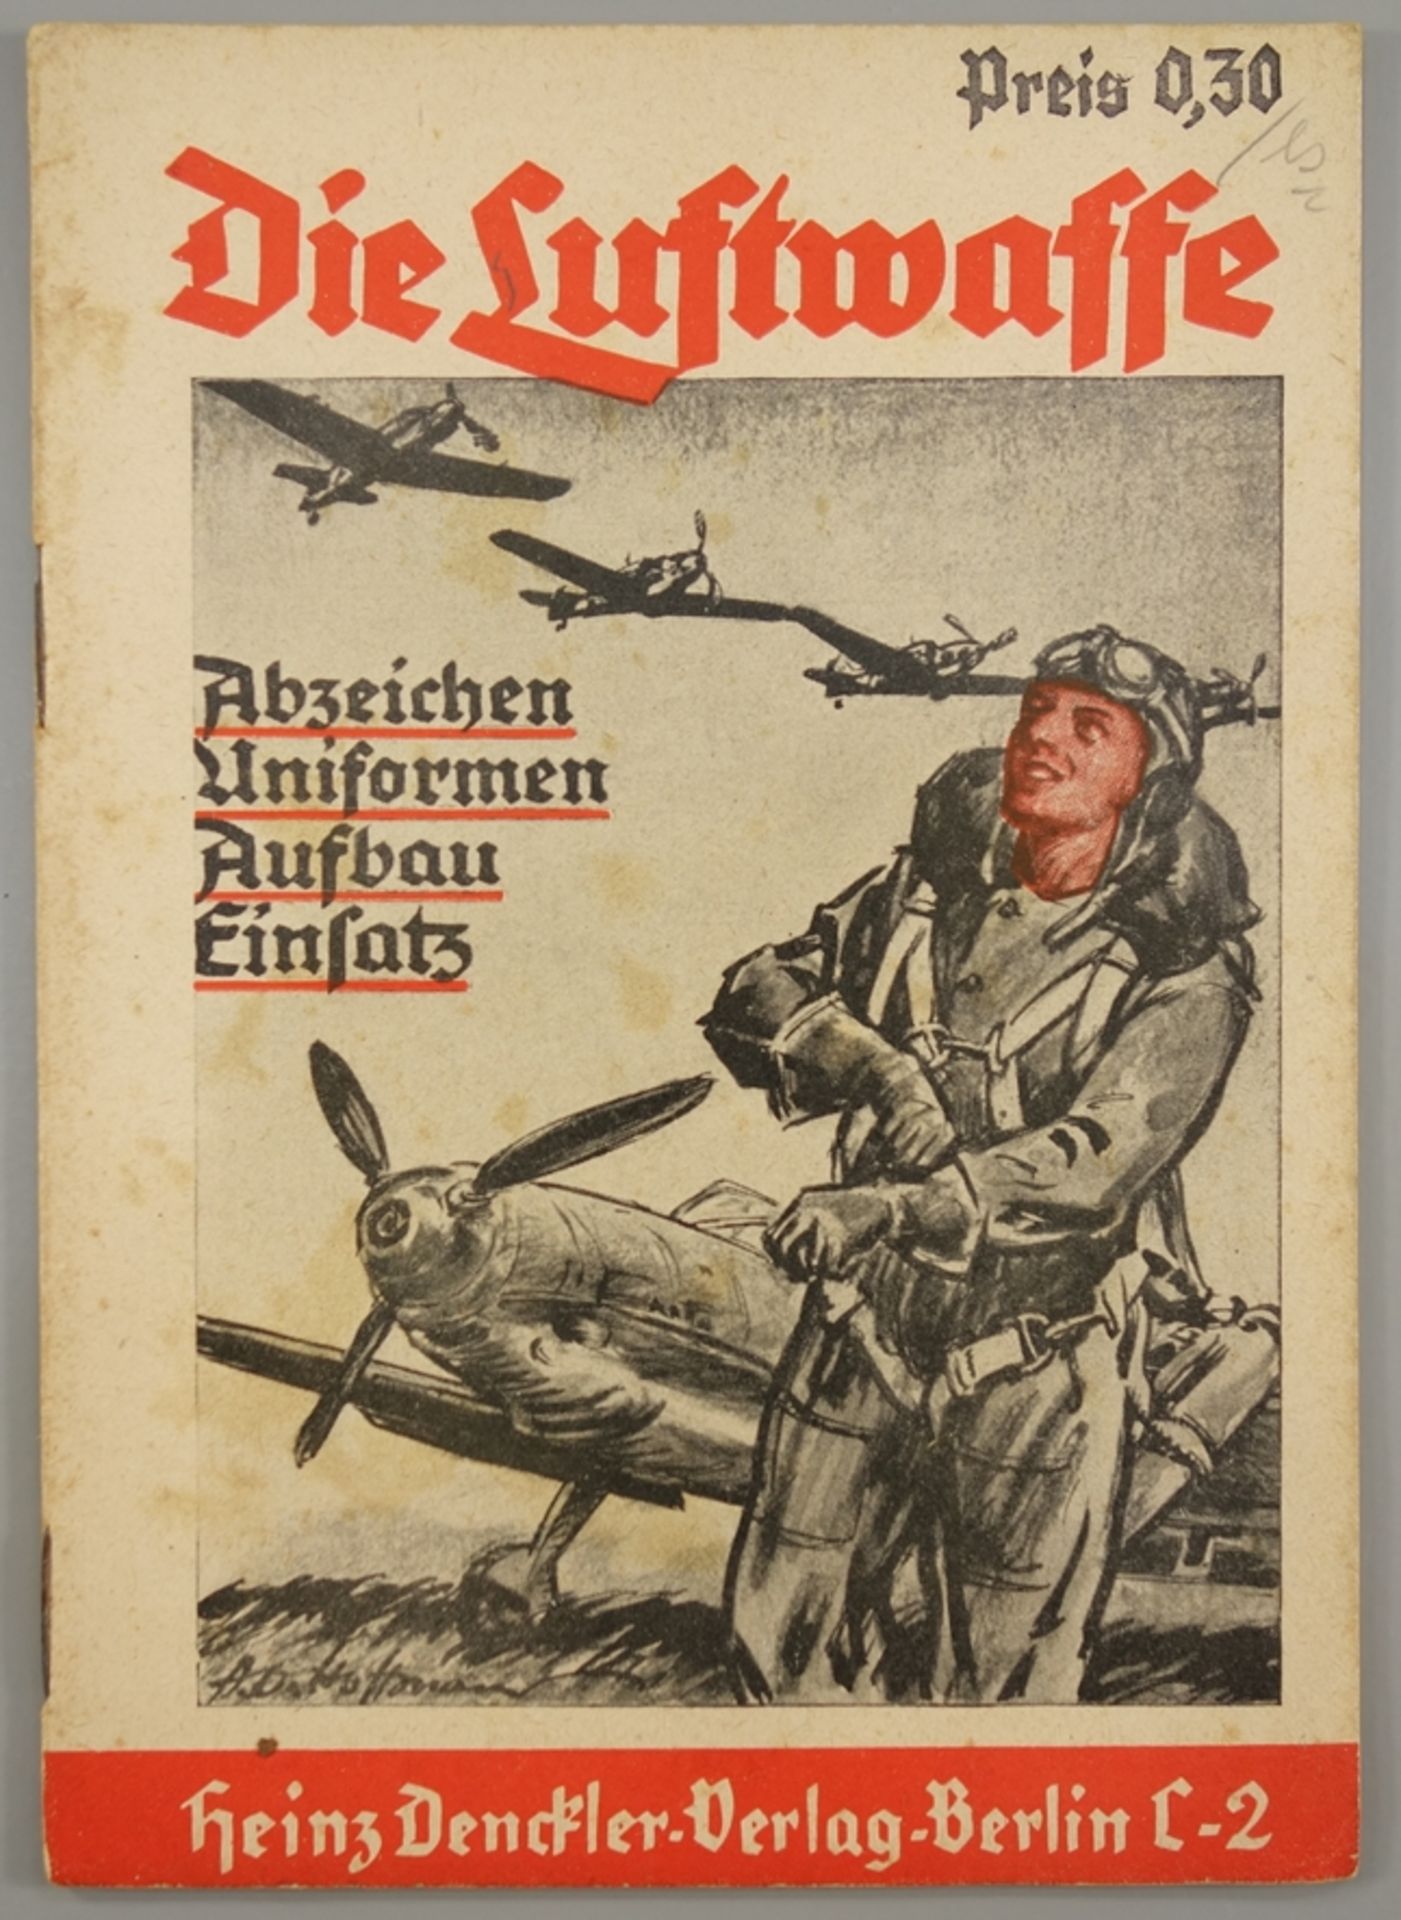 Die Luftwaffe, Heinz Denckler Verlag, Berlin, 1.Auflage, WK II, Abzeichen, Uniformen, Aufbau und